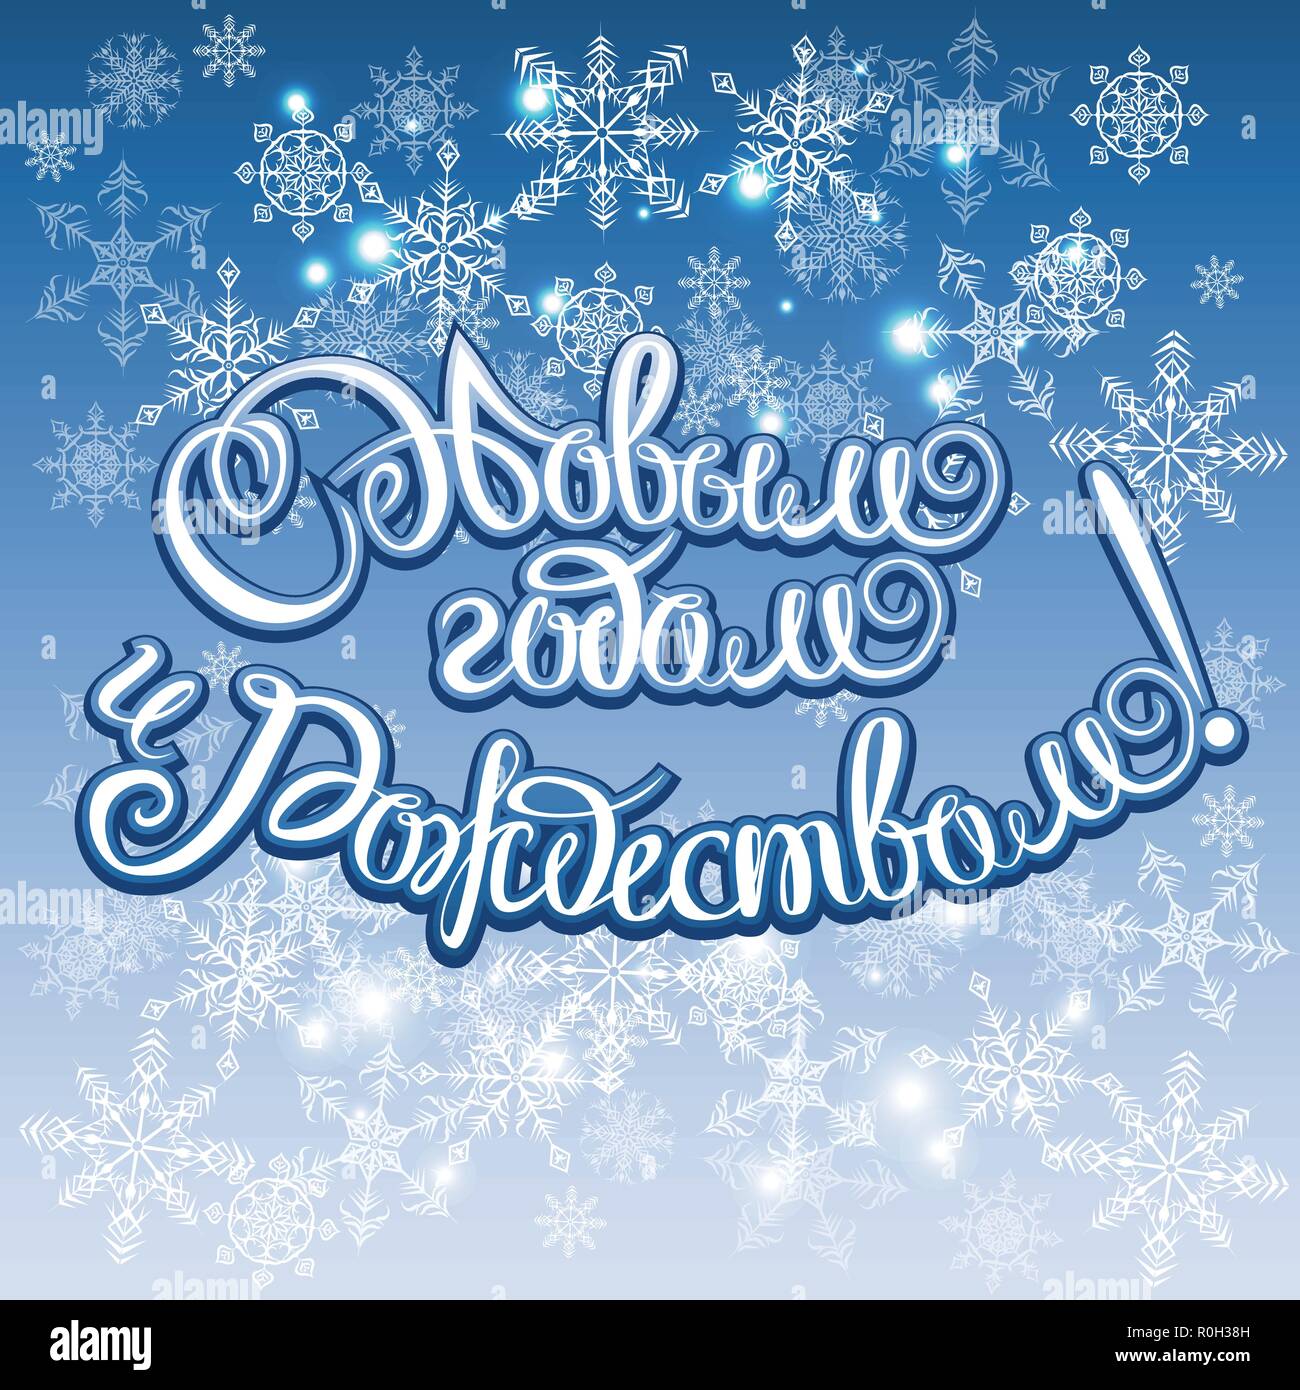 Buon Natale E Felice Anno Nuovo In Russo.Felice Anno Nuovo Russo E Buon Natale Calligraphy Lettering Happy Holiday Greeting Card Iscrizione Immagine E Vettoriale Alamy